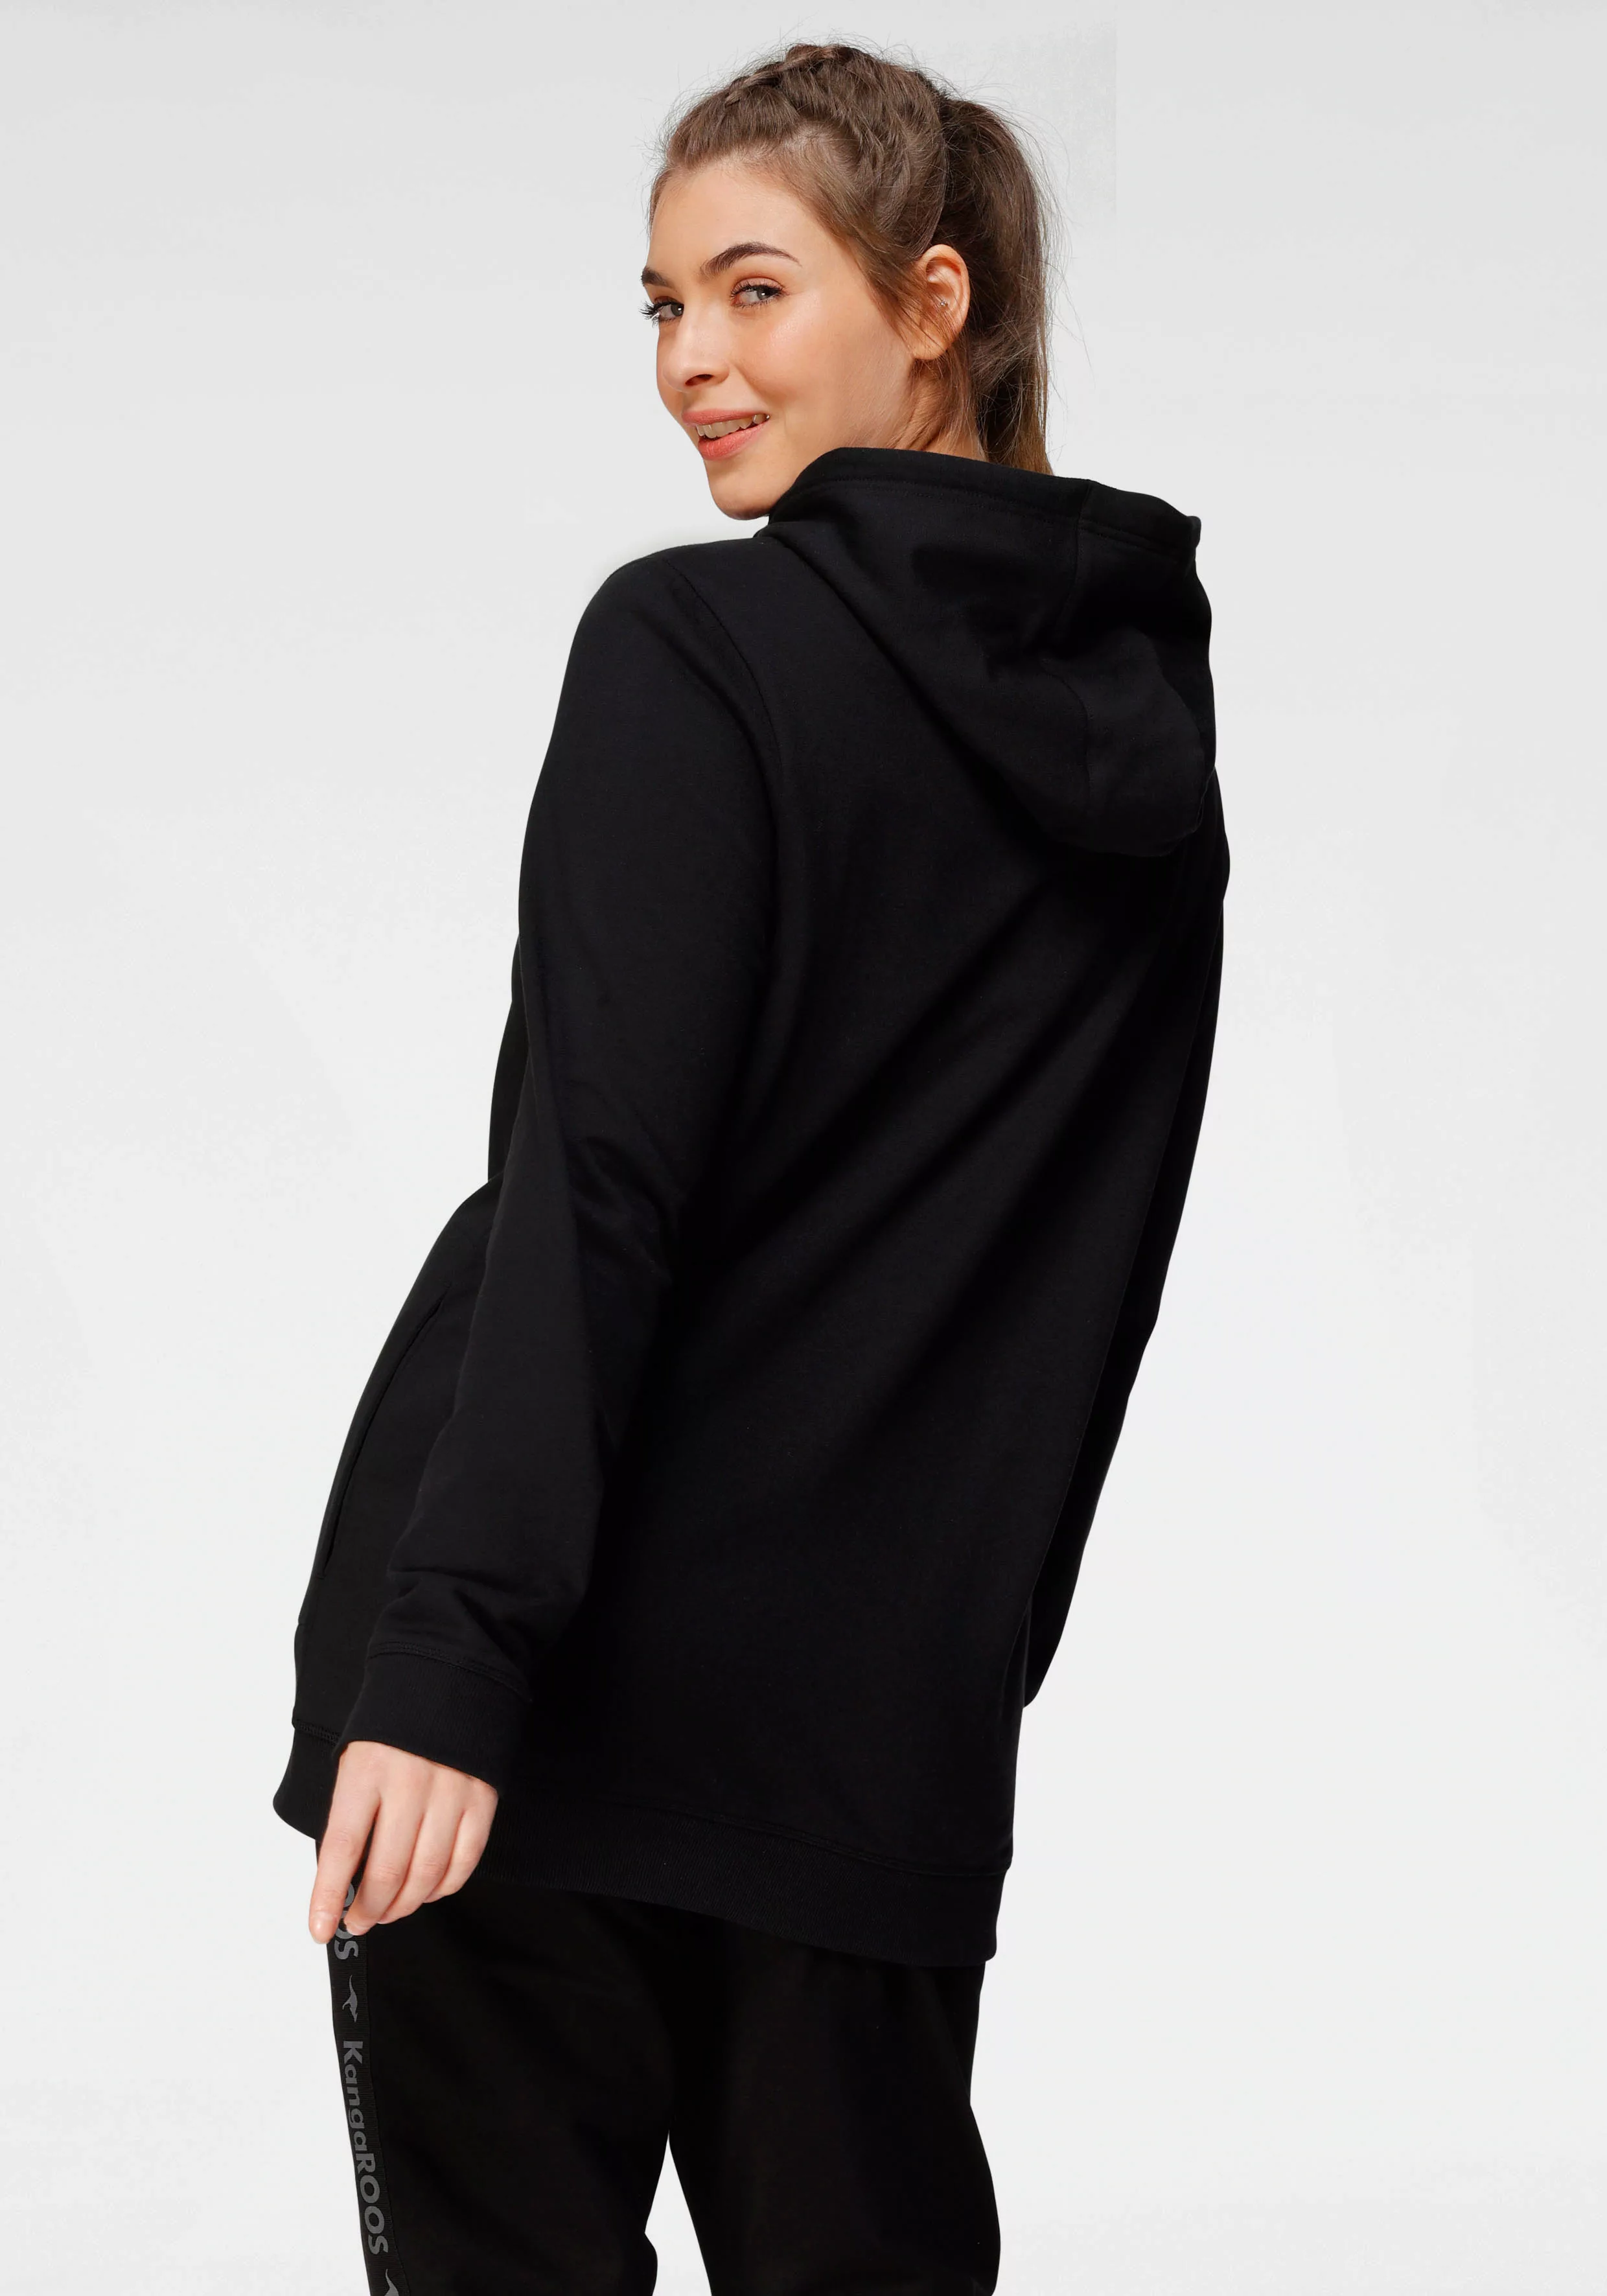 KangaROOS Sweatshirt Große Größen günstig online kaufen